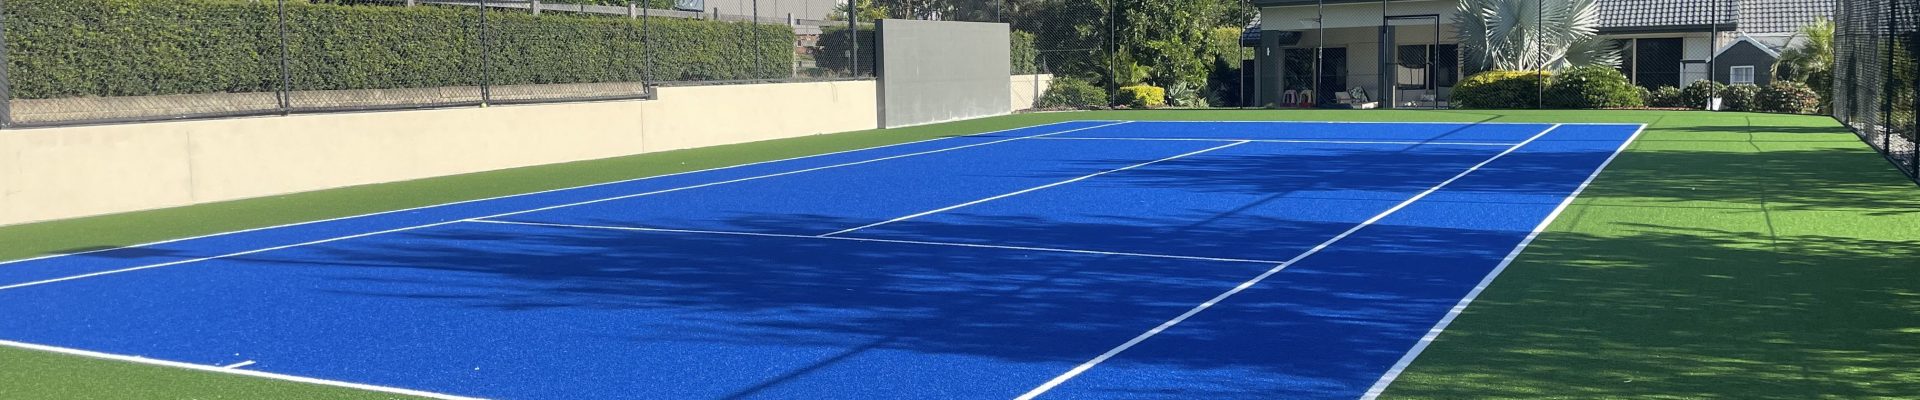 Lux Tennis court turf